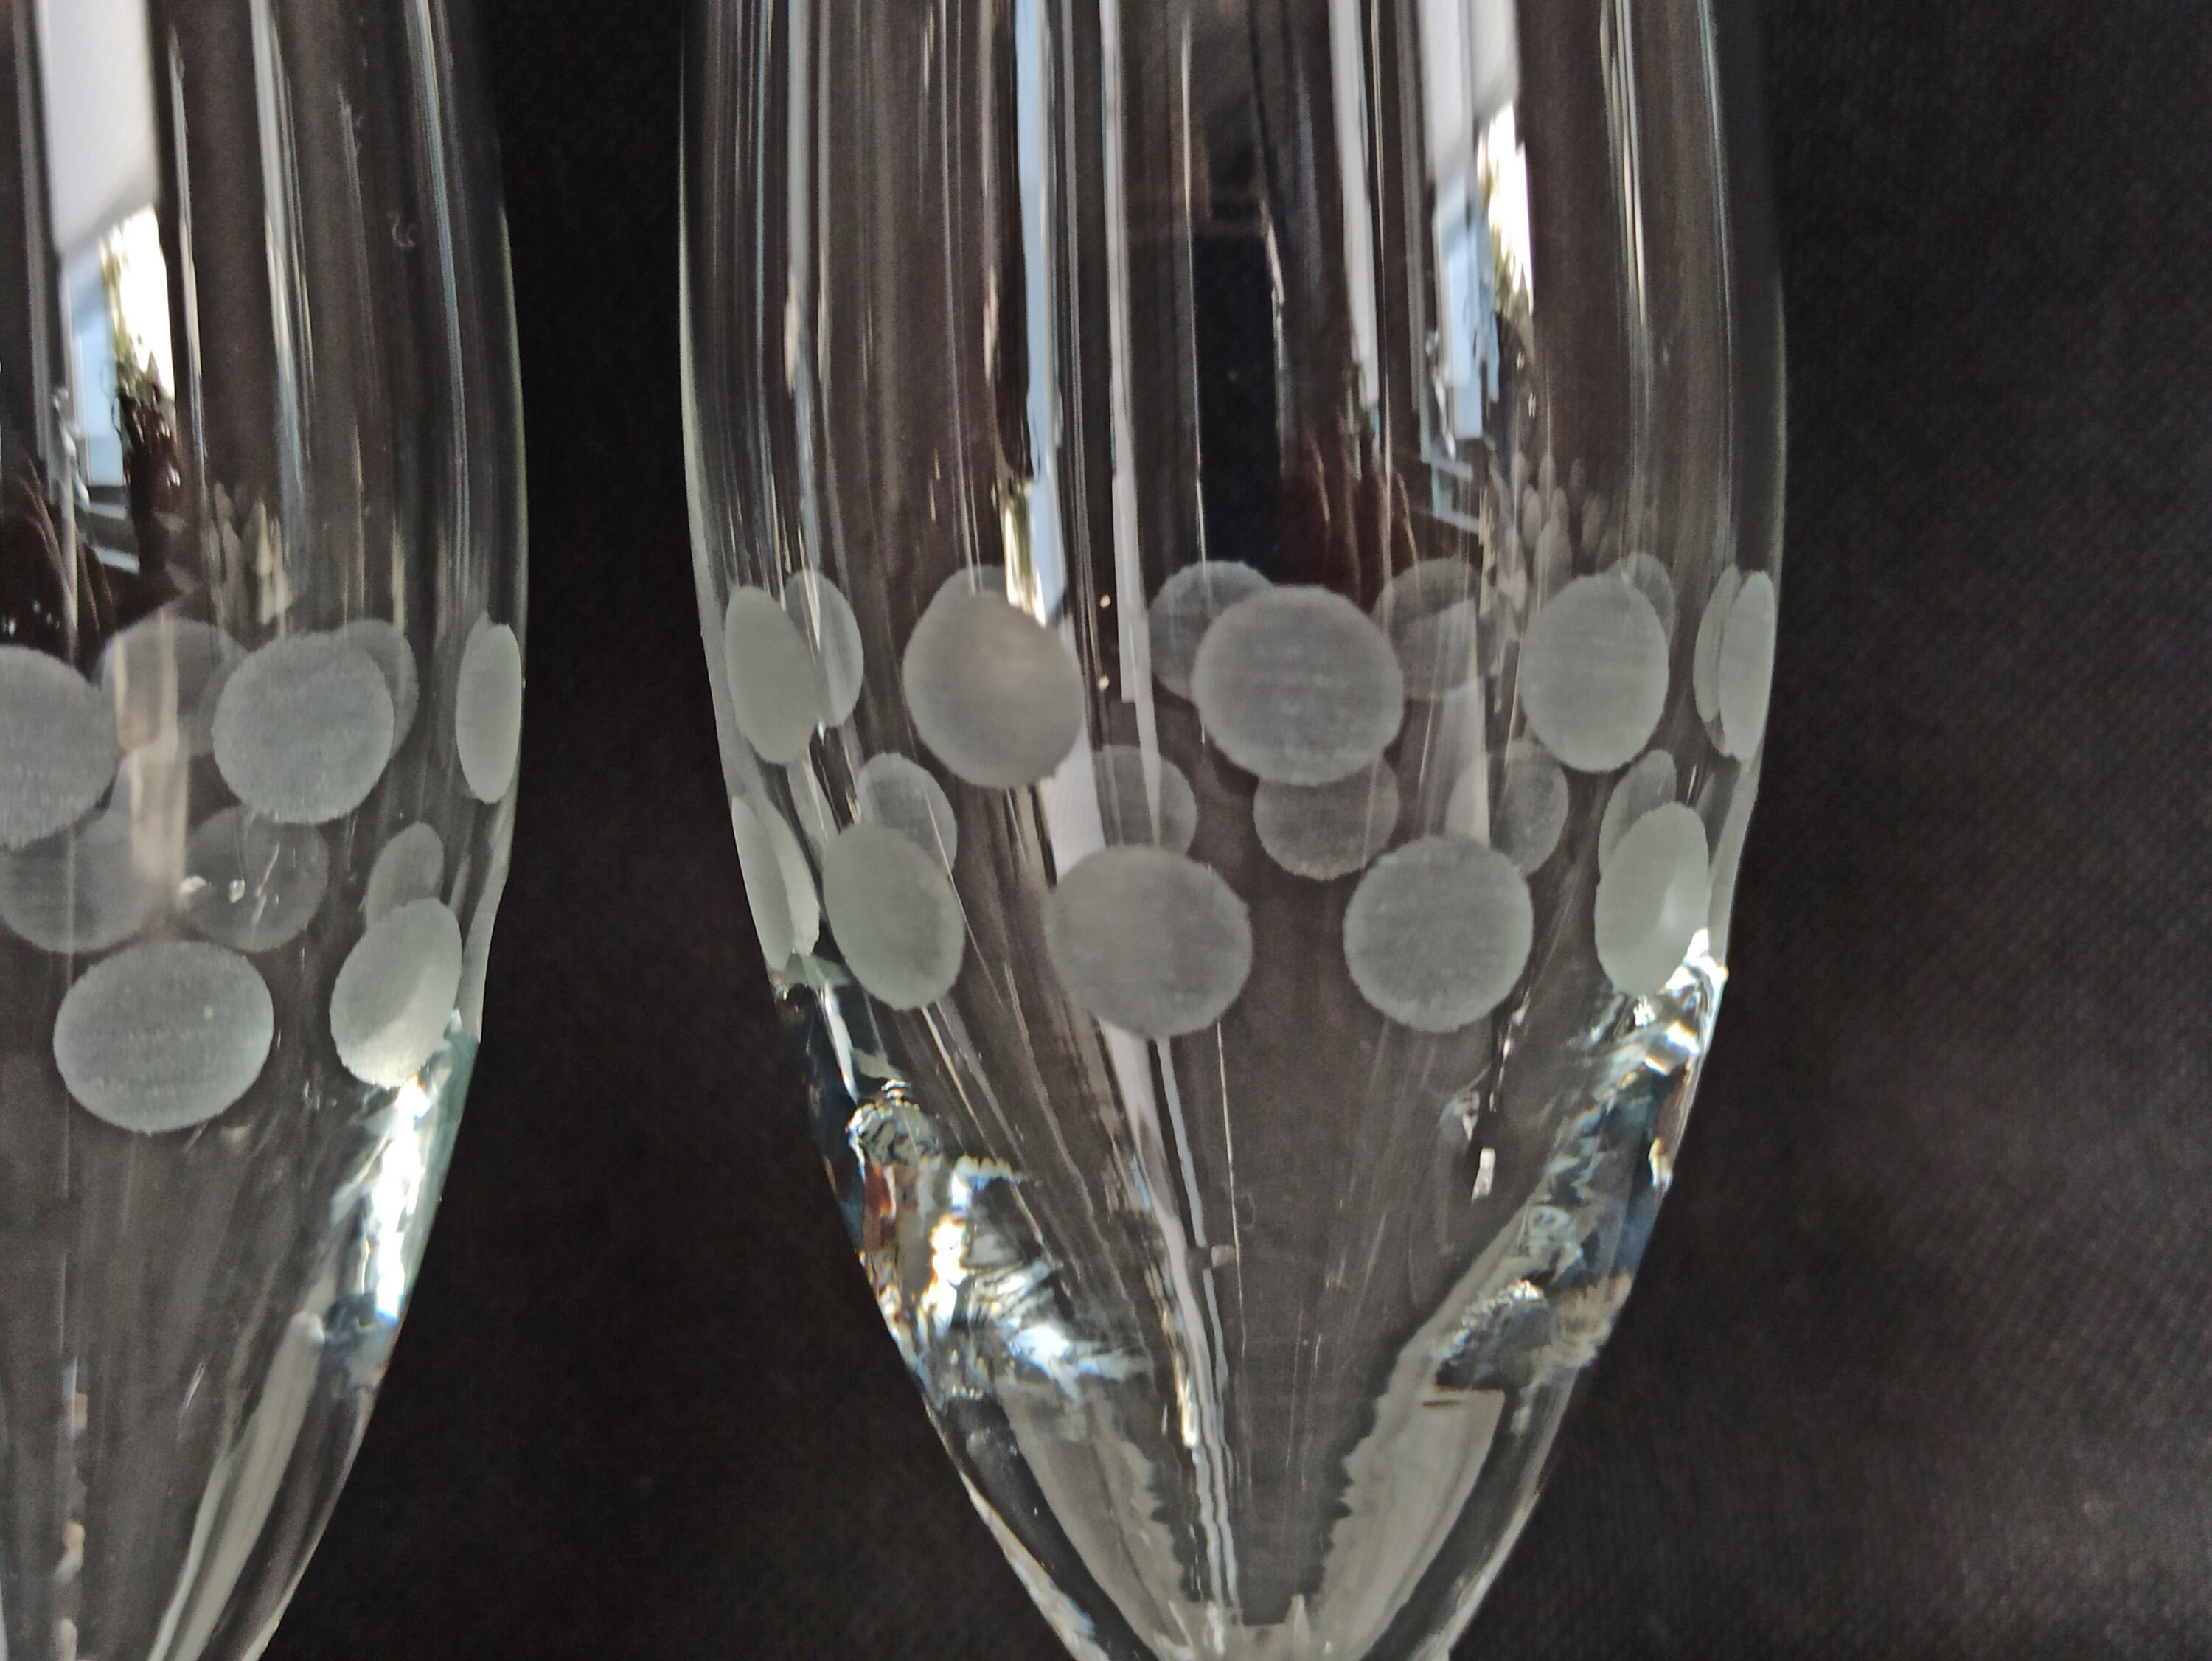 Tulip champagne glasses (Set of 6) – SofaPotato